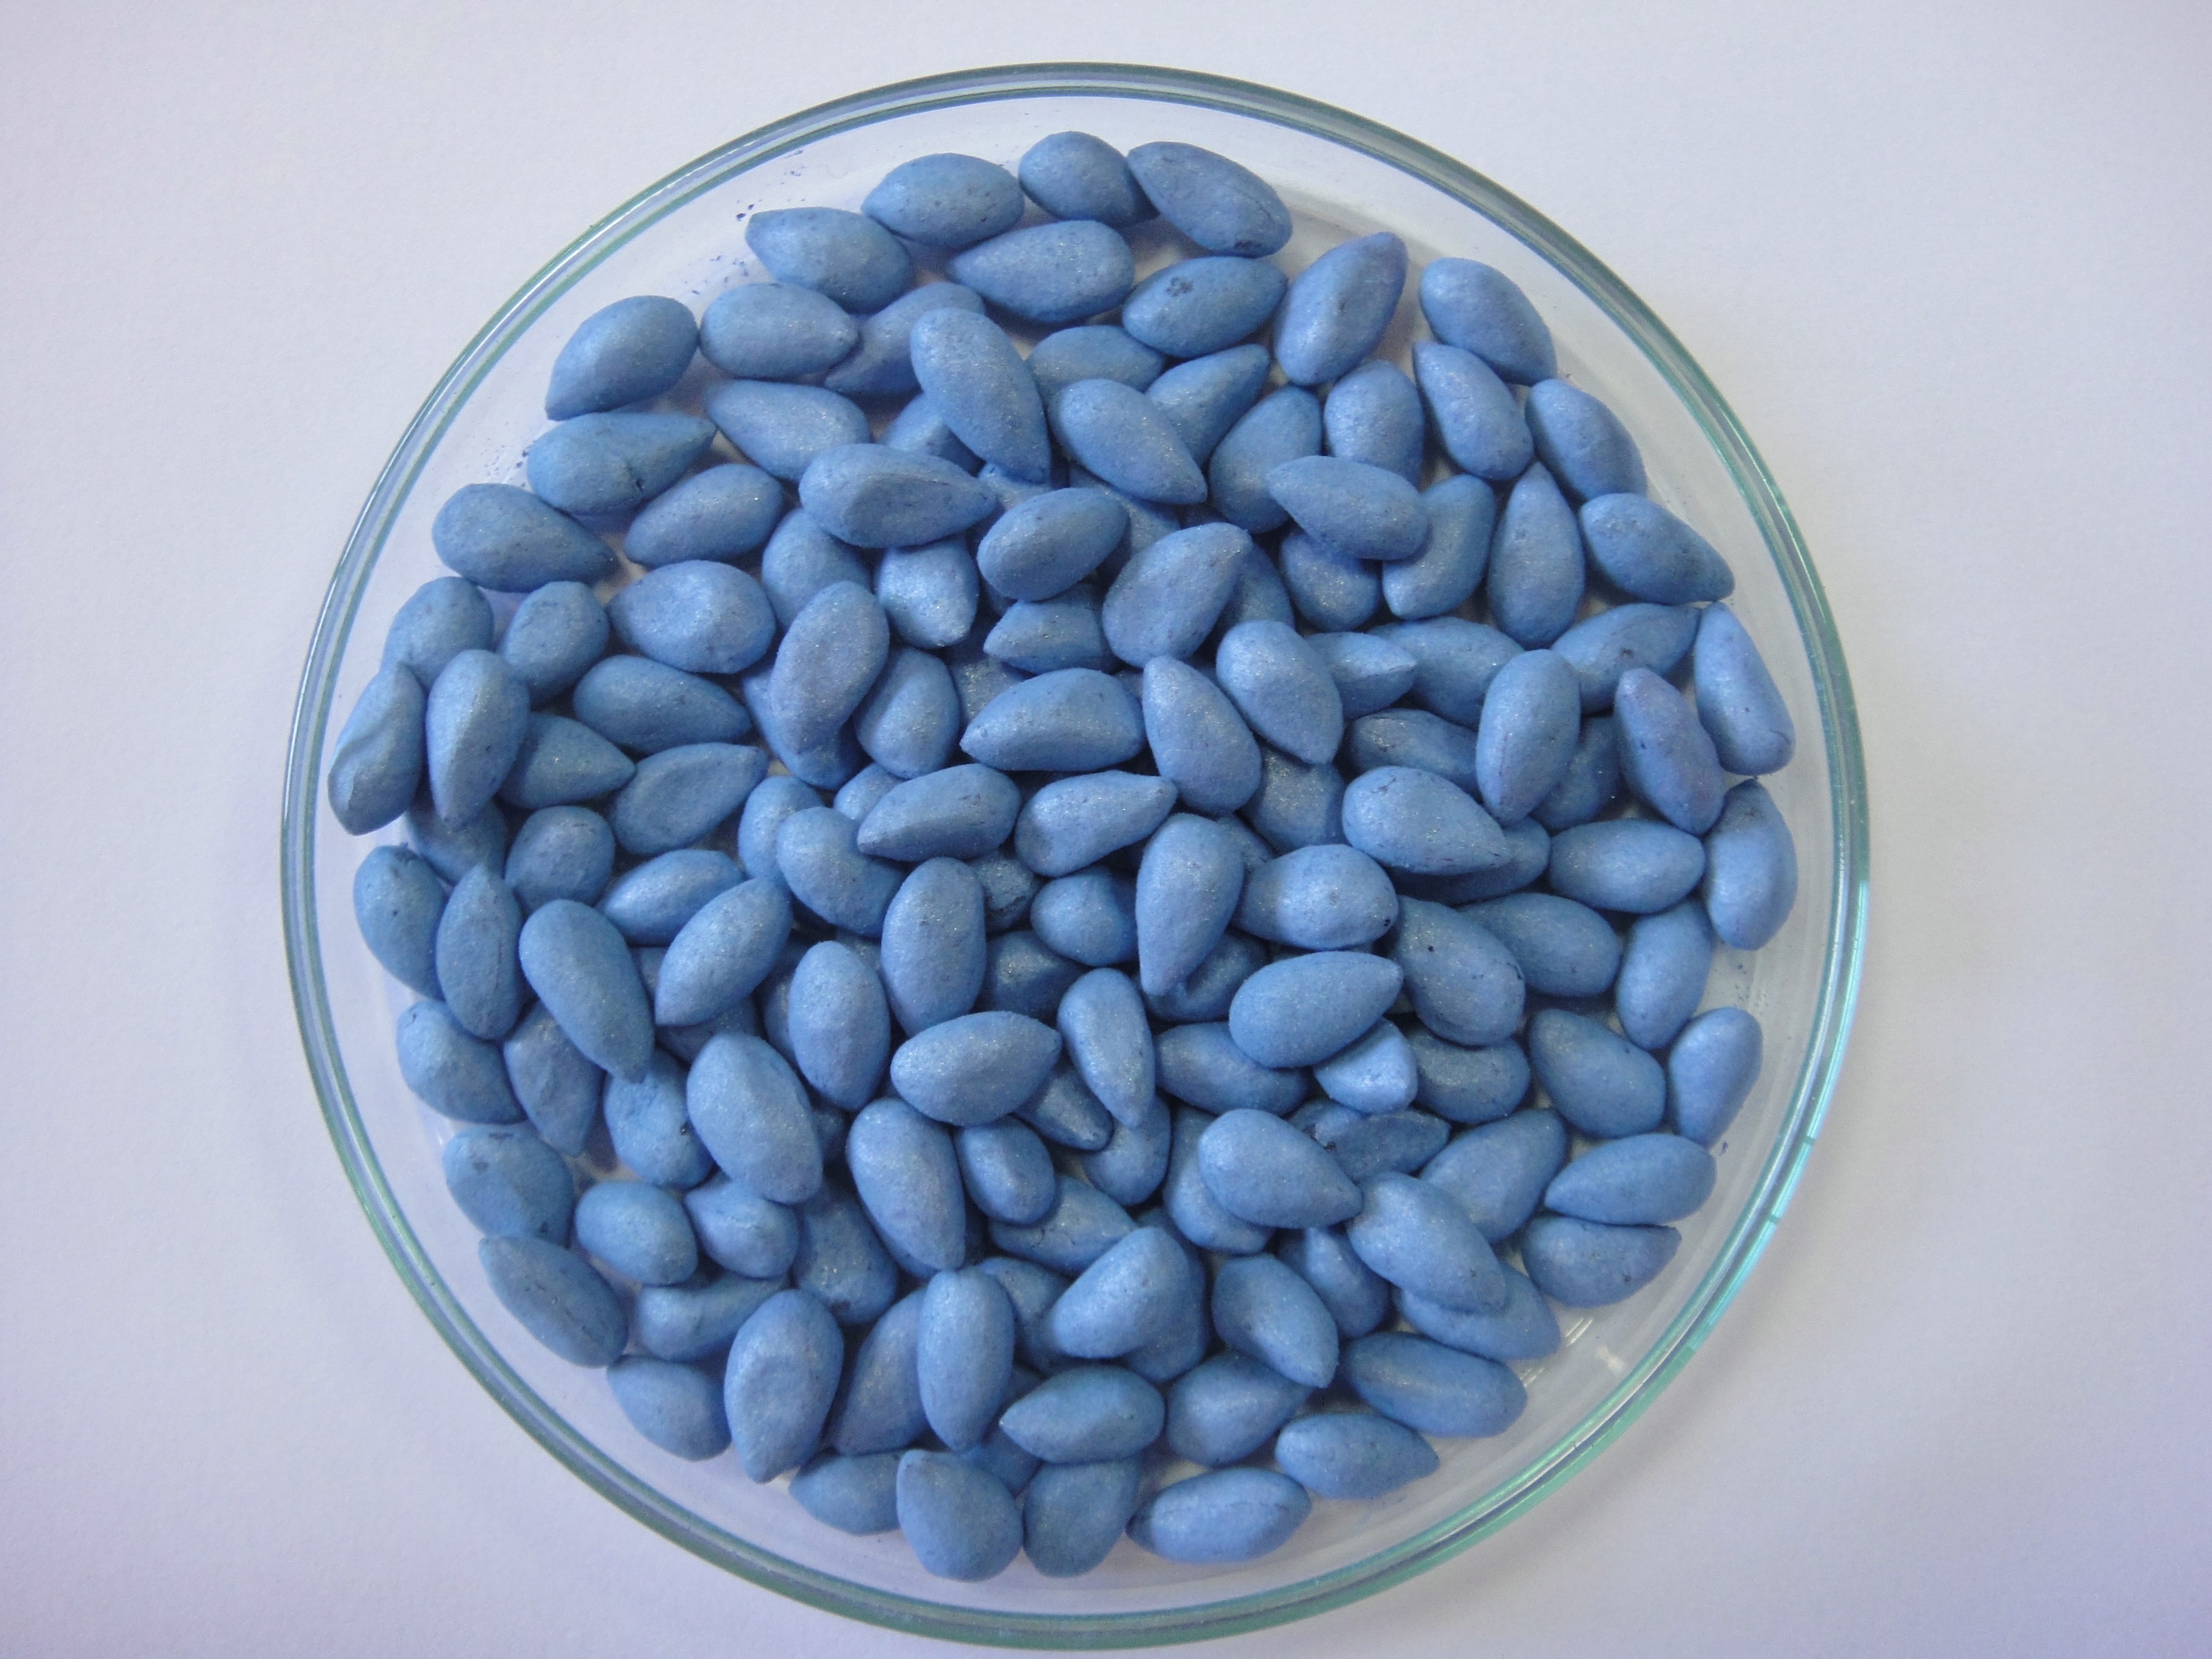 Sementes azuis = Tratadas com fungicidas. Coloração azul devido ao tratamento com o produto Permit: recomendado para proteção das sementes de algodão contra ação fitotóxica do herbicida clomazone (Gamit e Gamit 360 CS).